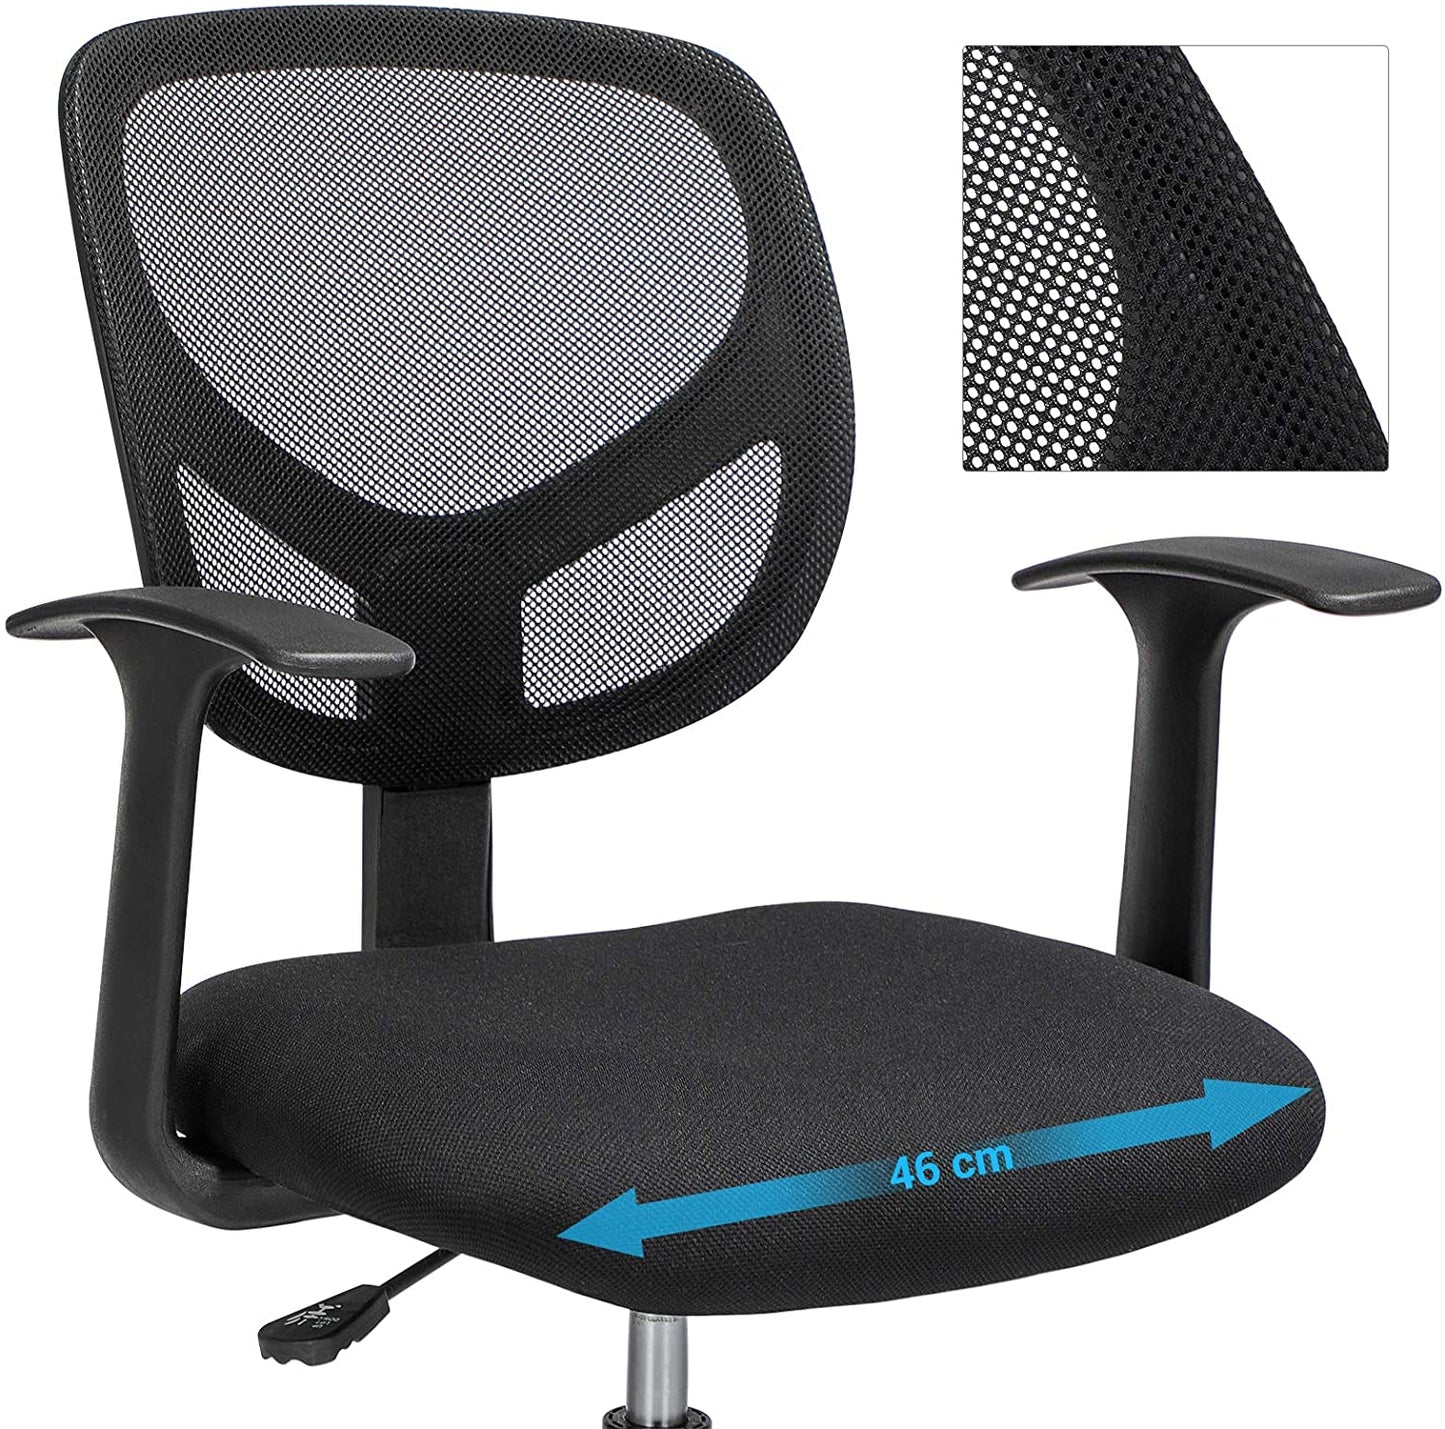 Chaise de bureau Nancy's Haypook - Chaise pivotante - Tabouret de travail - Ergonomique - Accoudoirs - Hauteur réglable - Repose-pieds - Noir - Plastique - Tissu - 64 x 64 x 97-117 cm 